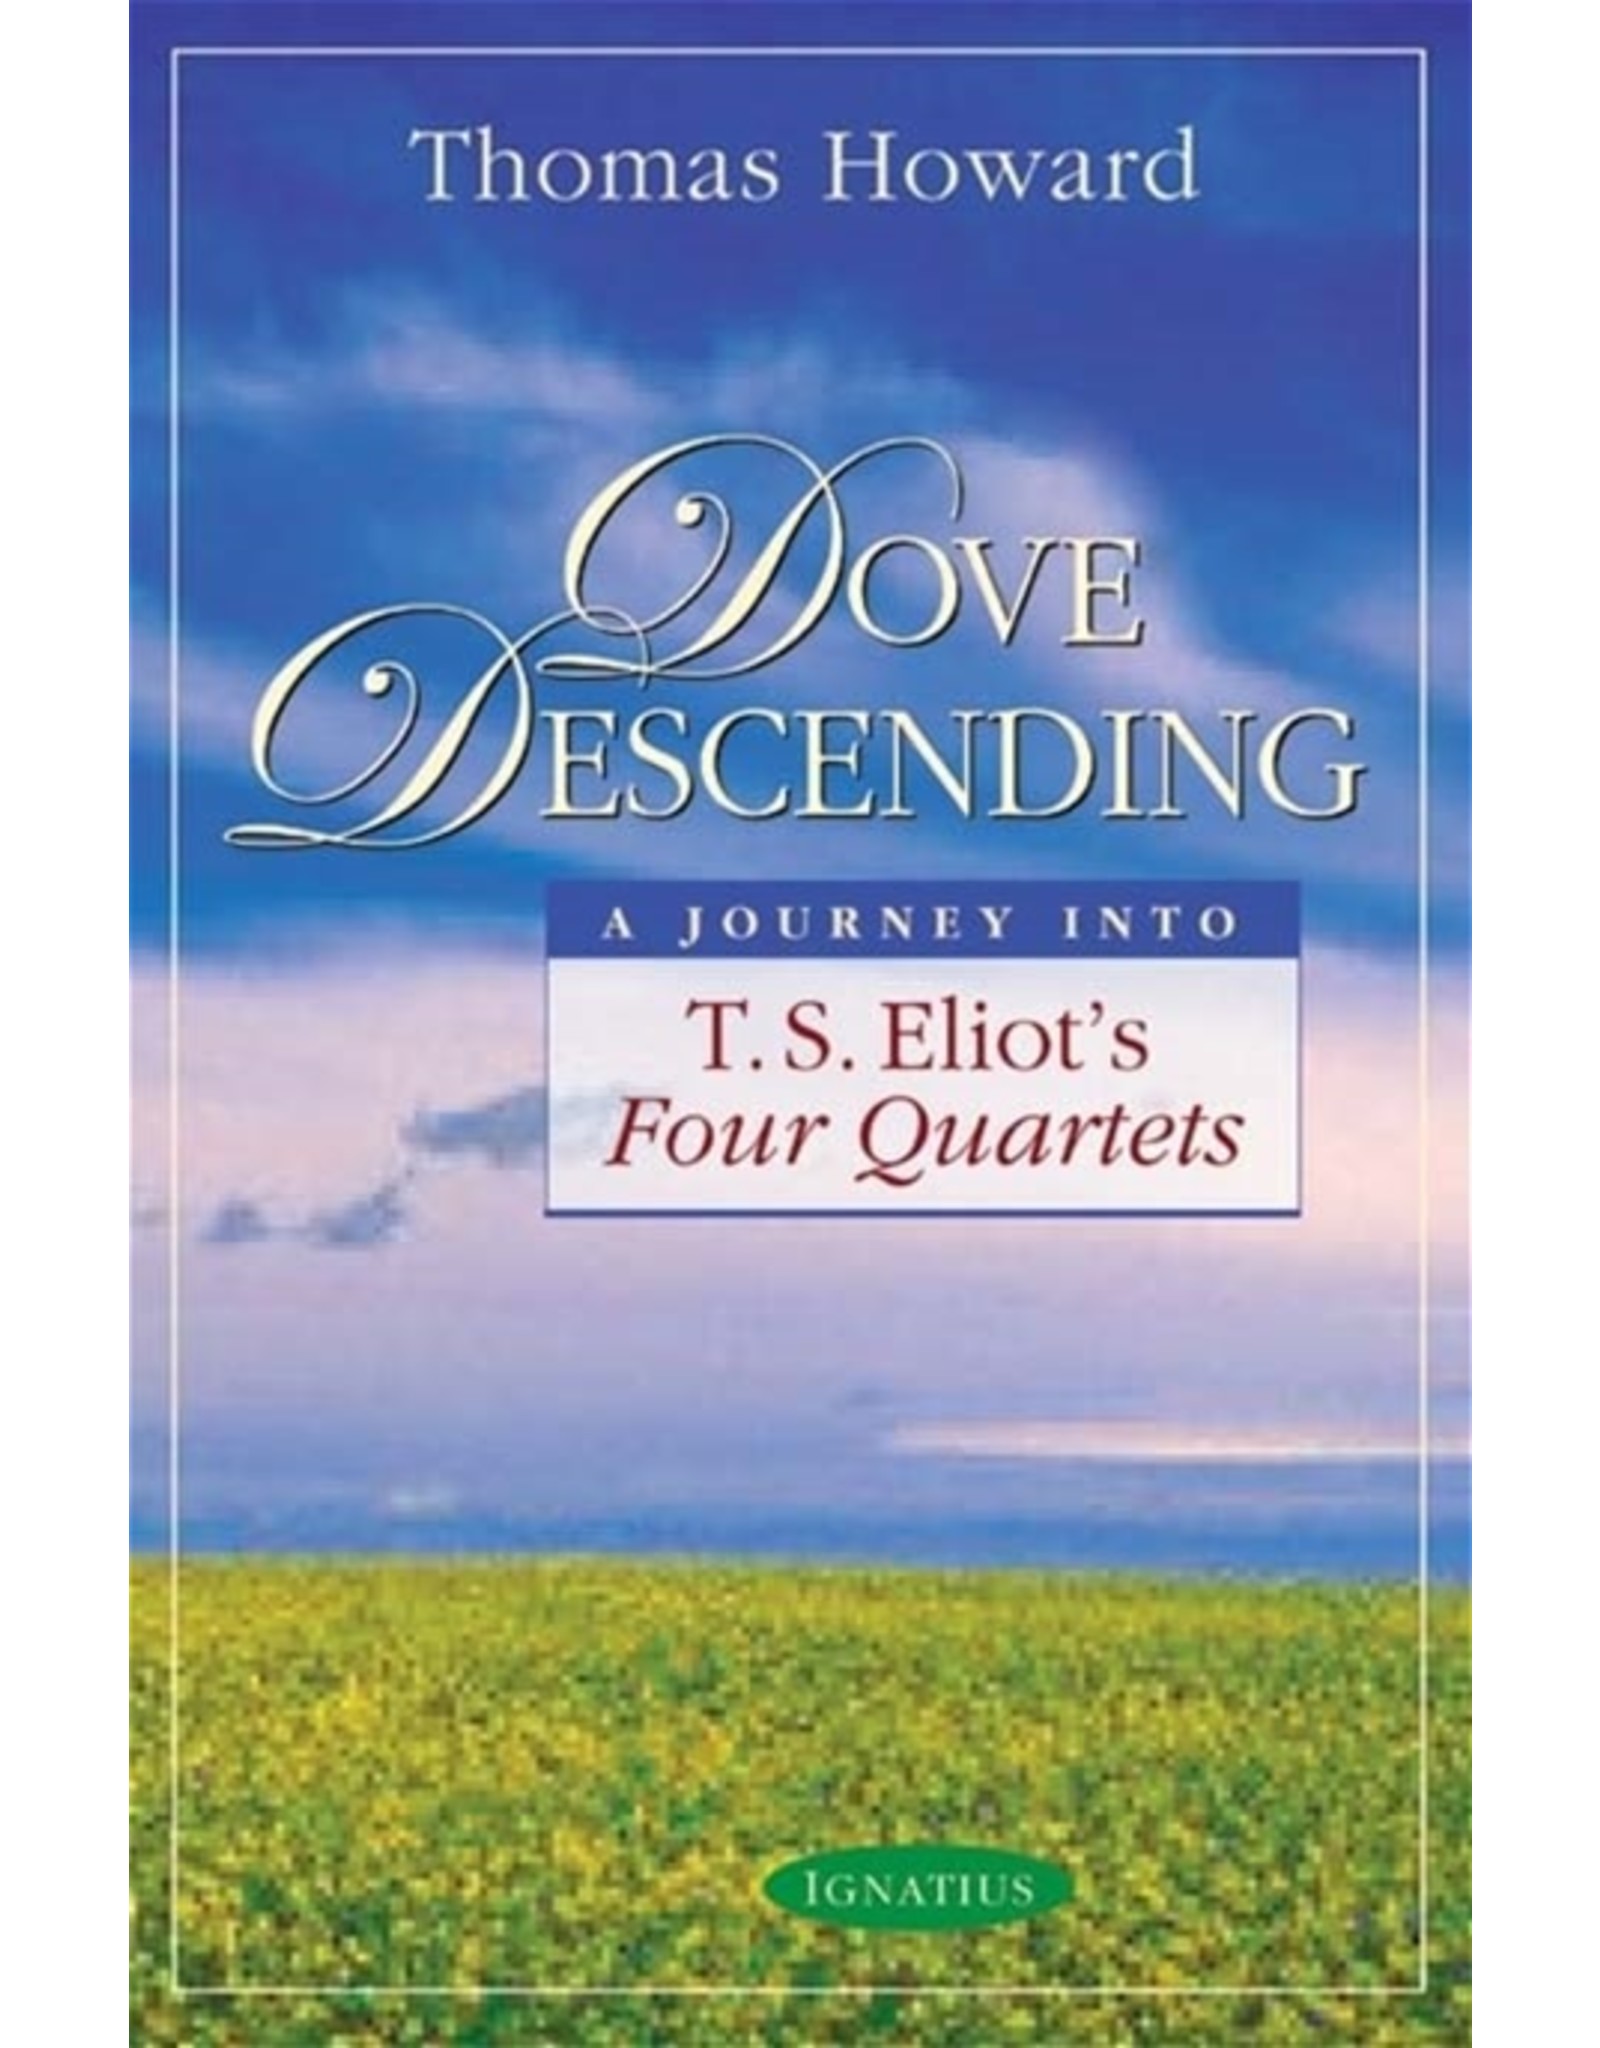 Ignatius Press Dove Descending: A Journey Into T.S. Eliot's Four Quartets